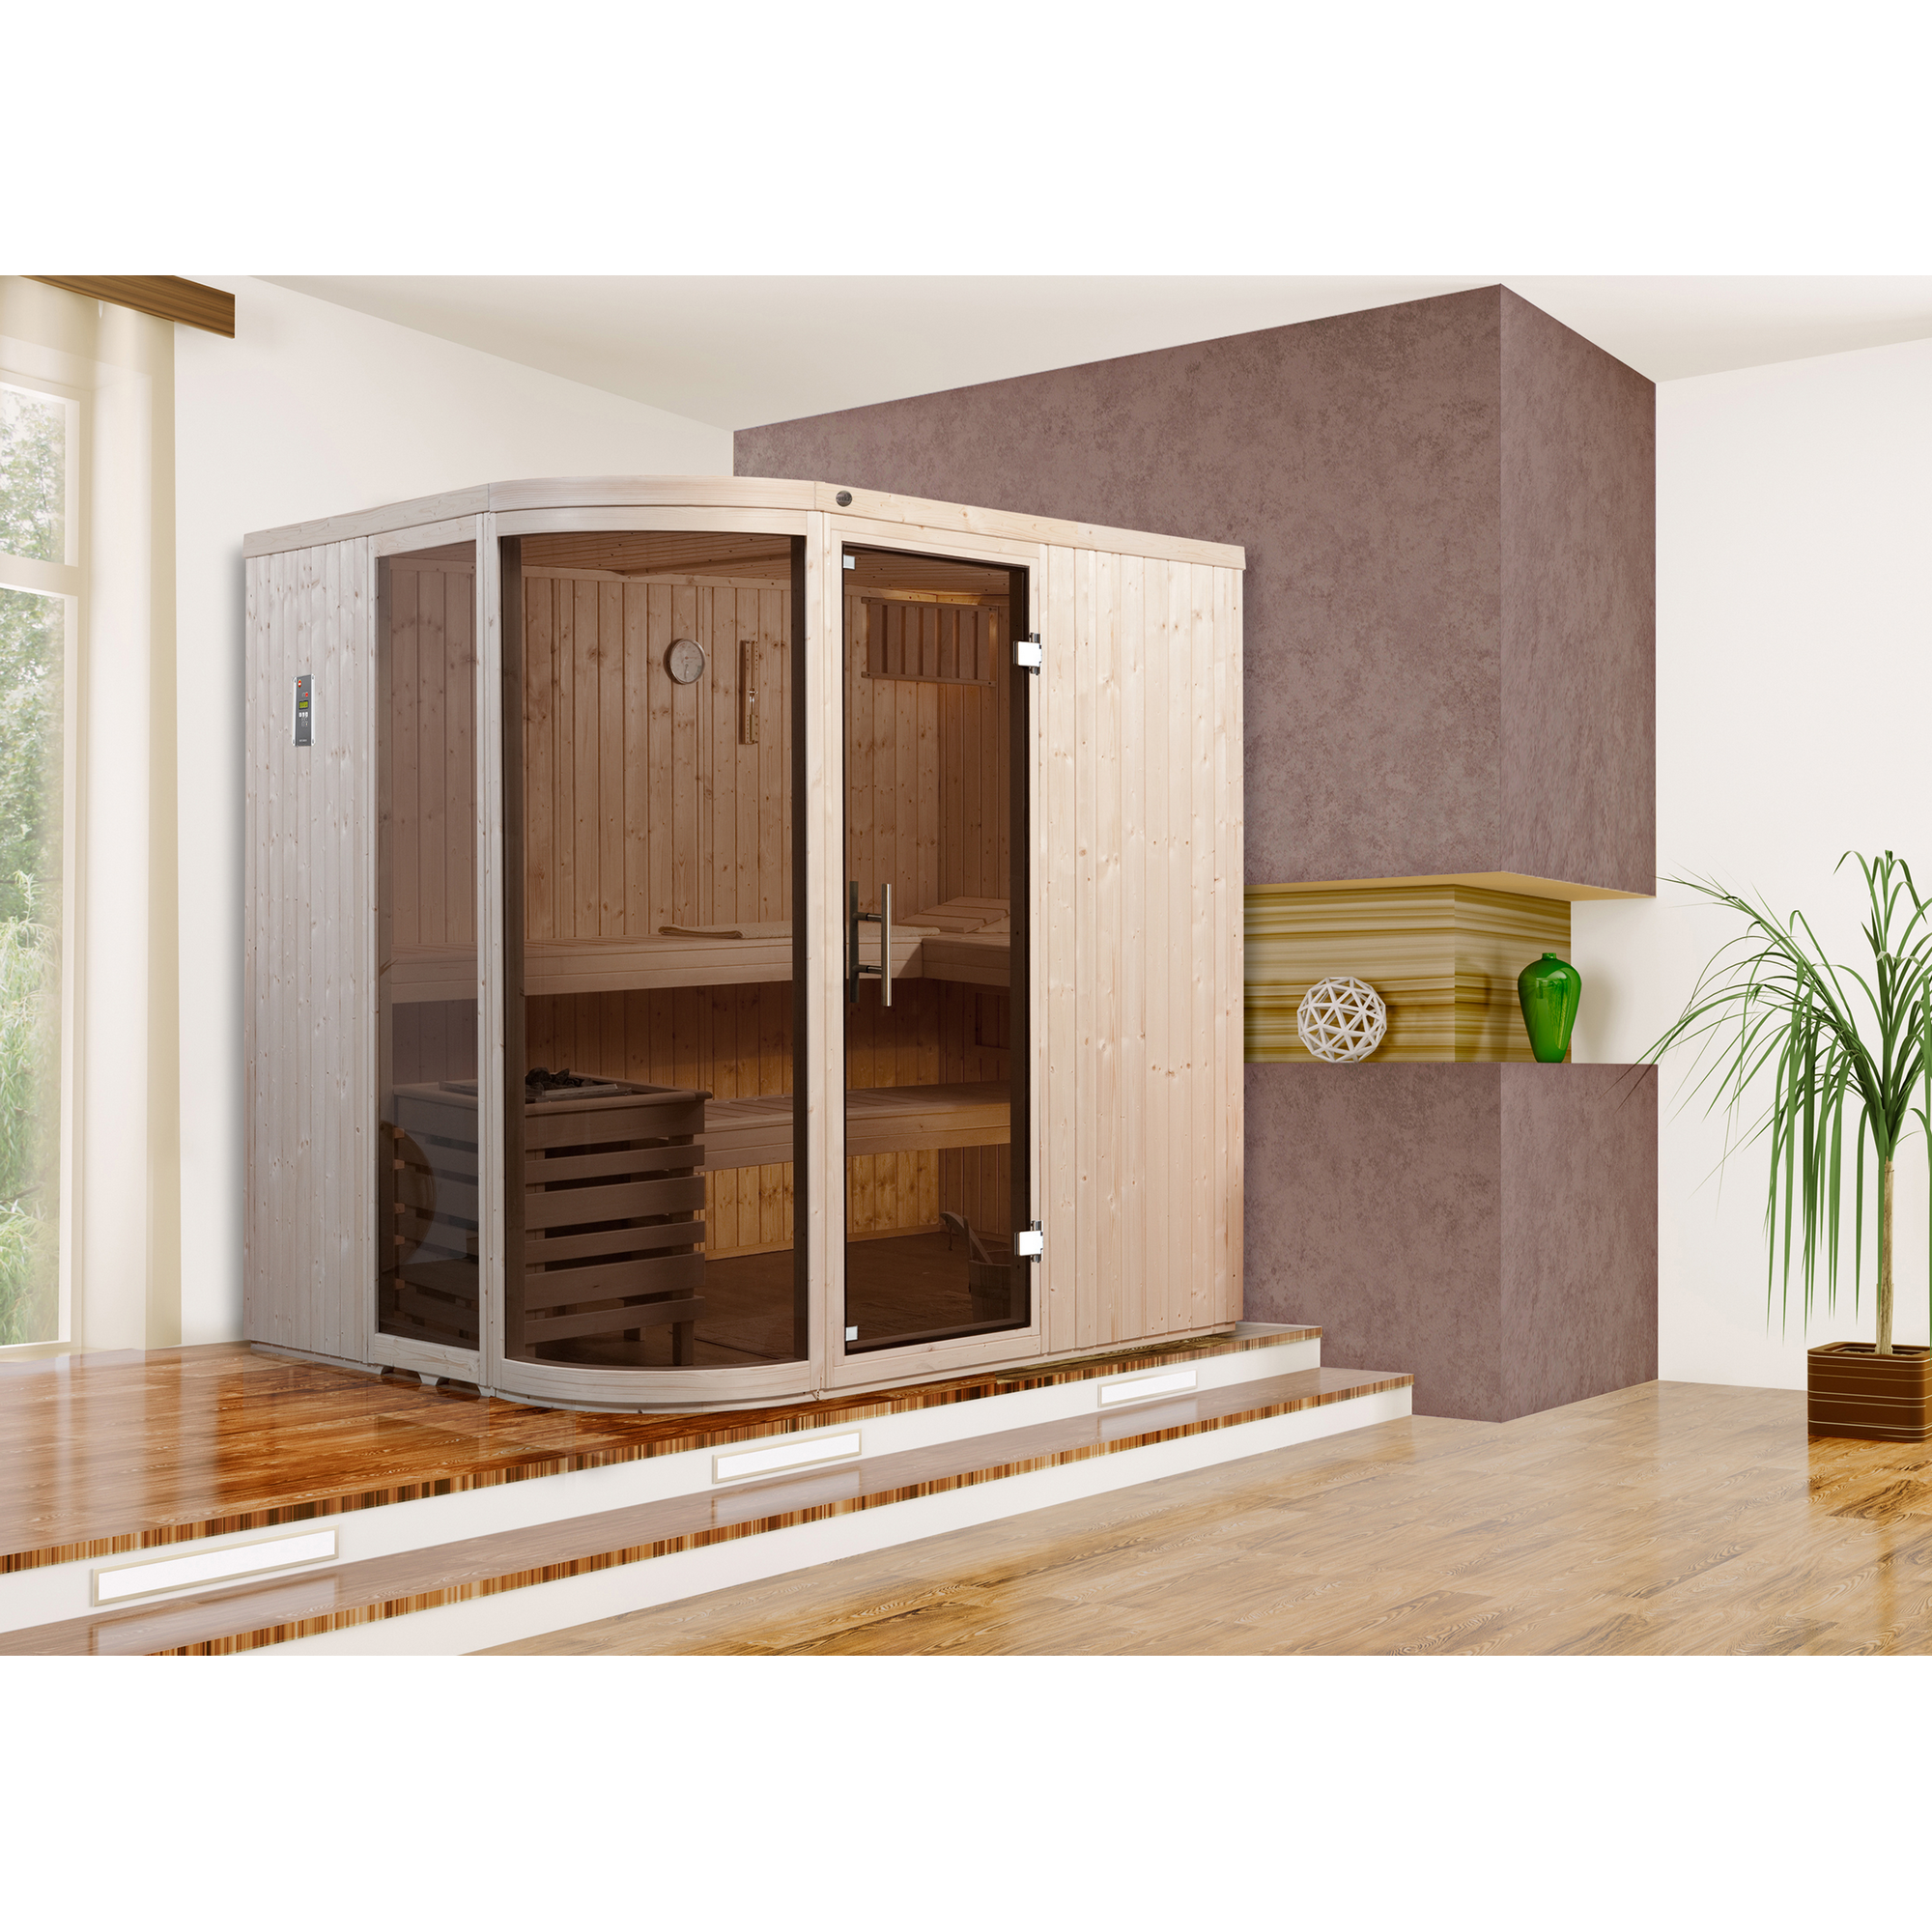 Elementsauna 'Sauna des Jahres' 194 x 194 cm mit Ofen 'OS', Glastür, Fenster + product picture